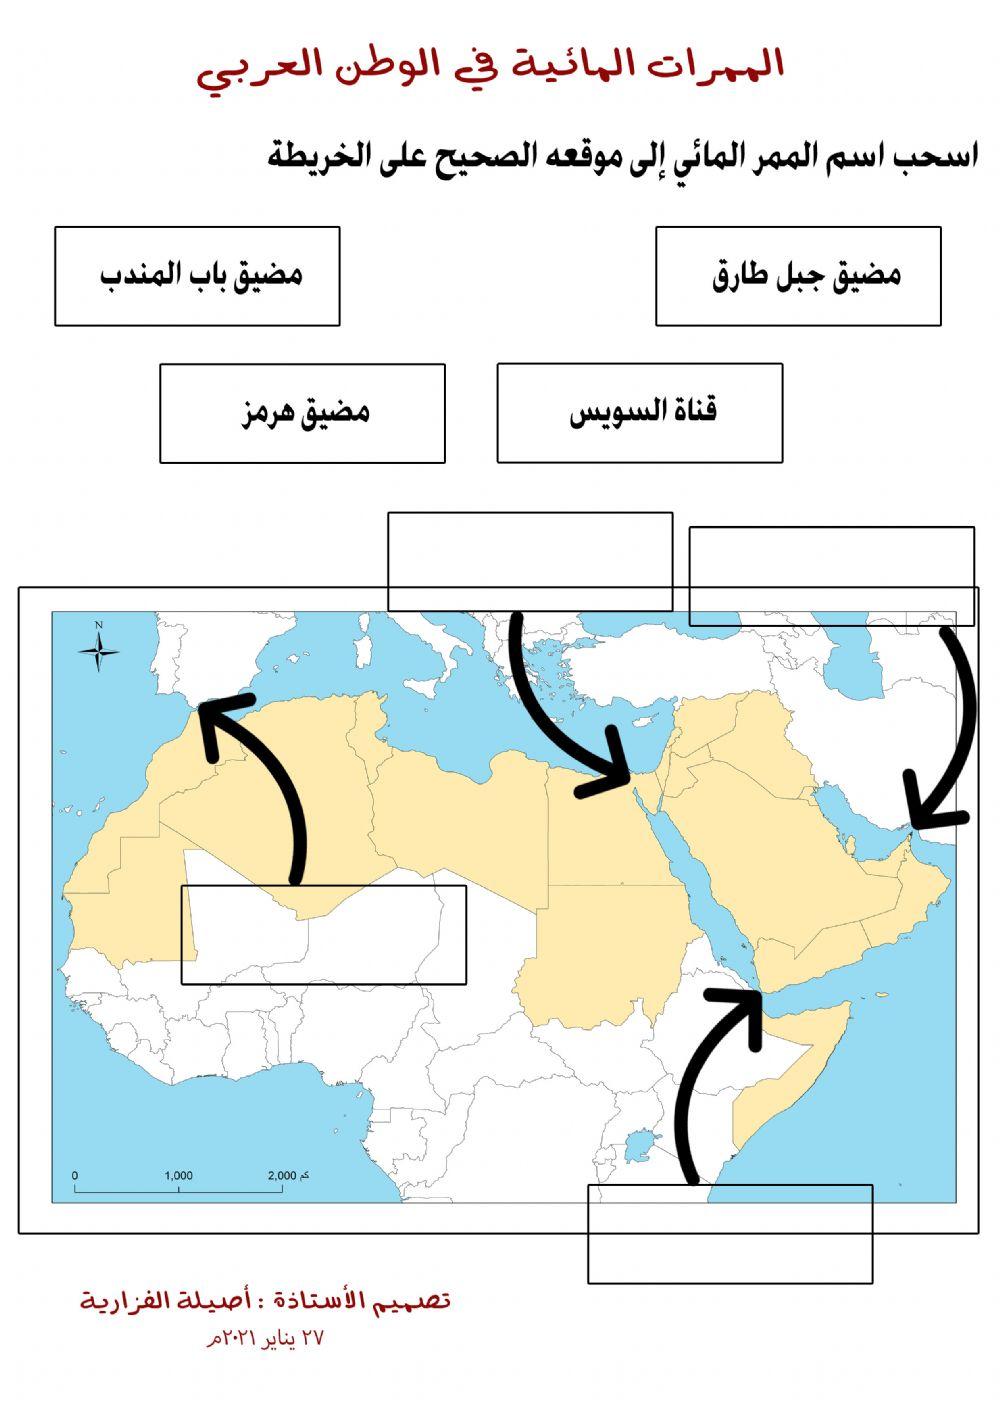 الممرات المائية في الوطن العربي